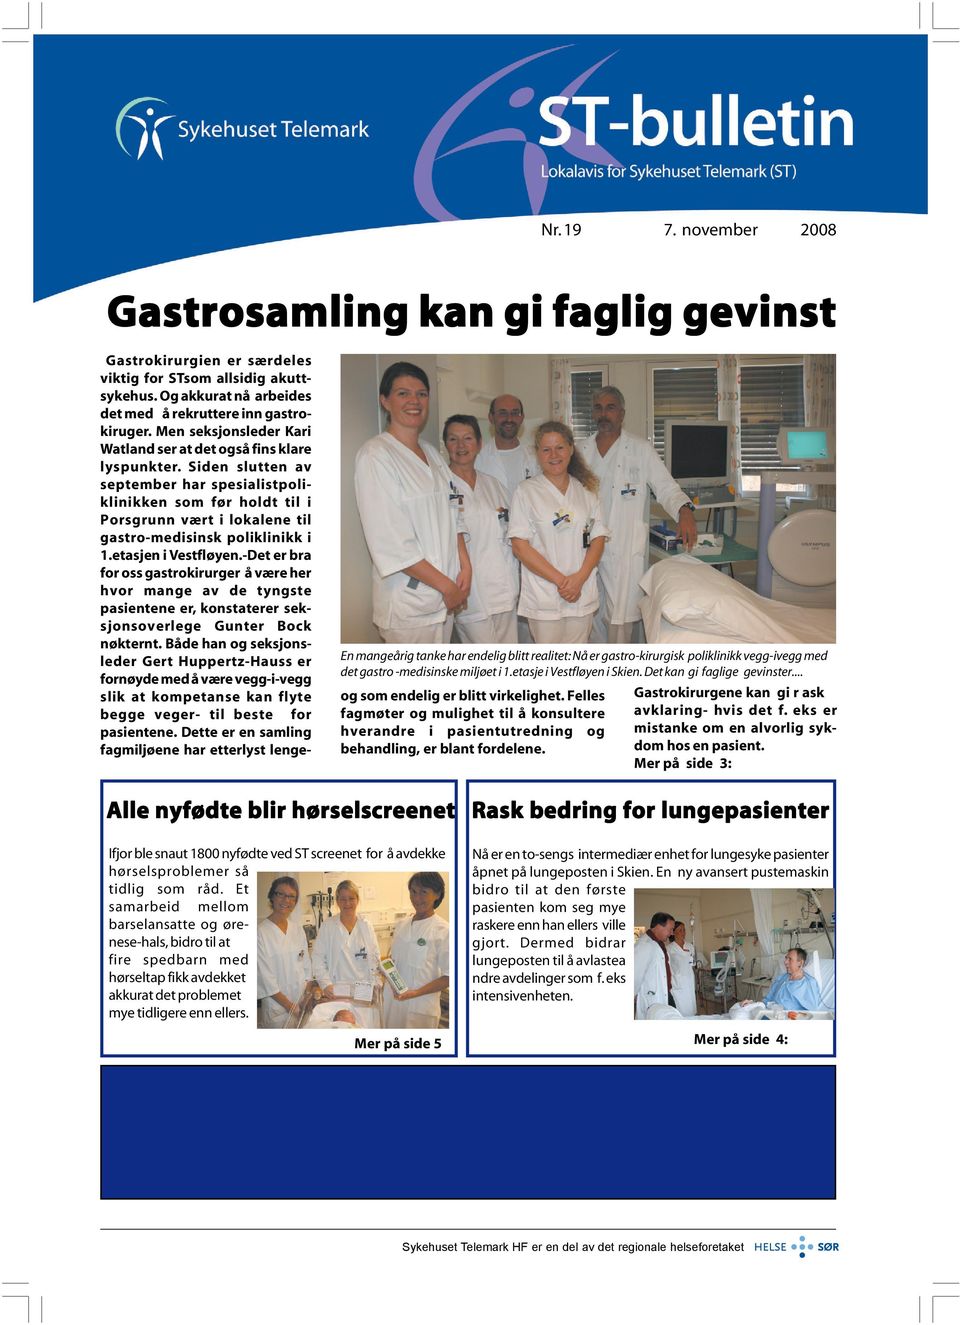 Siden slutten av september har spesialistpoliklinikken som før holdt til i Porsgrunn vært i lokalene til gastro-medisinsk poliklinikk i 1.etasjen i Vestfløyen.